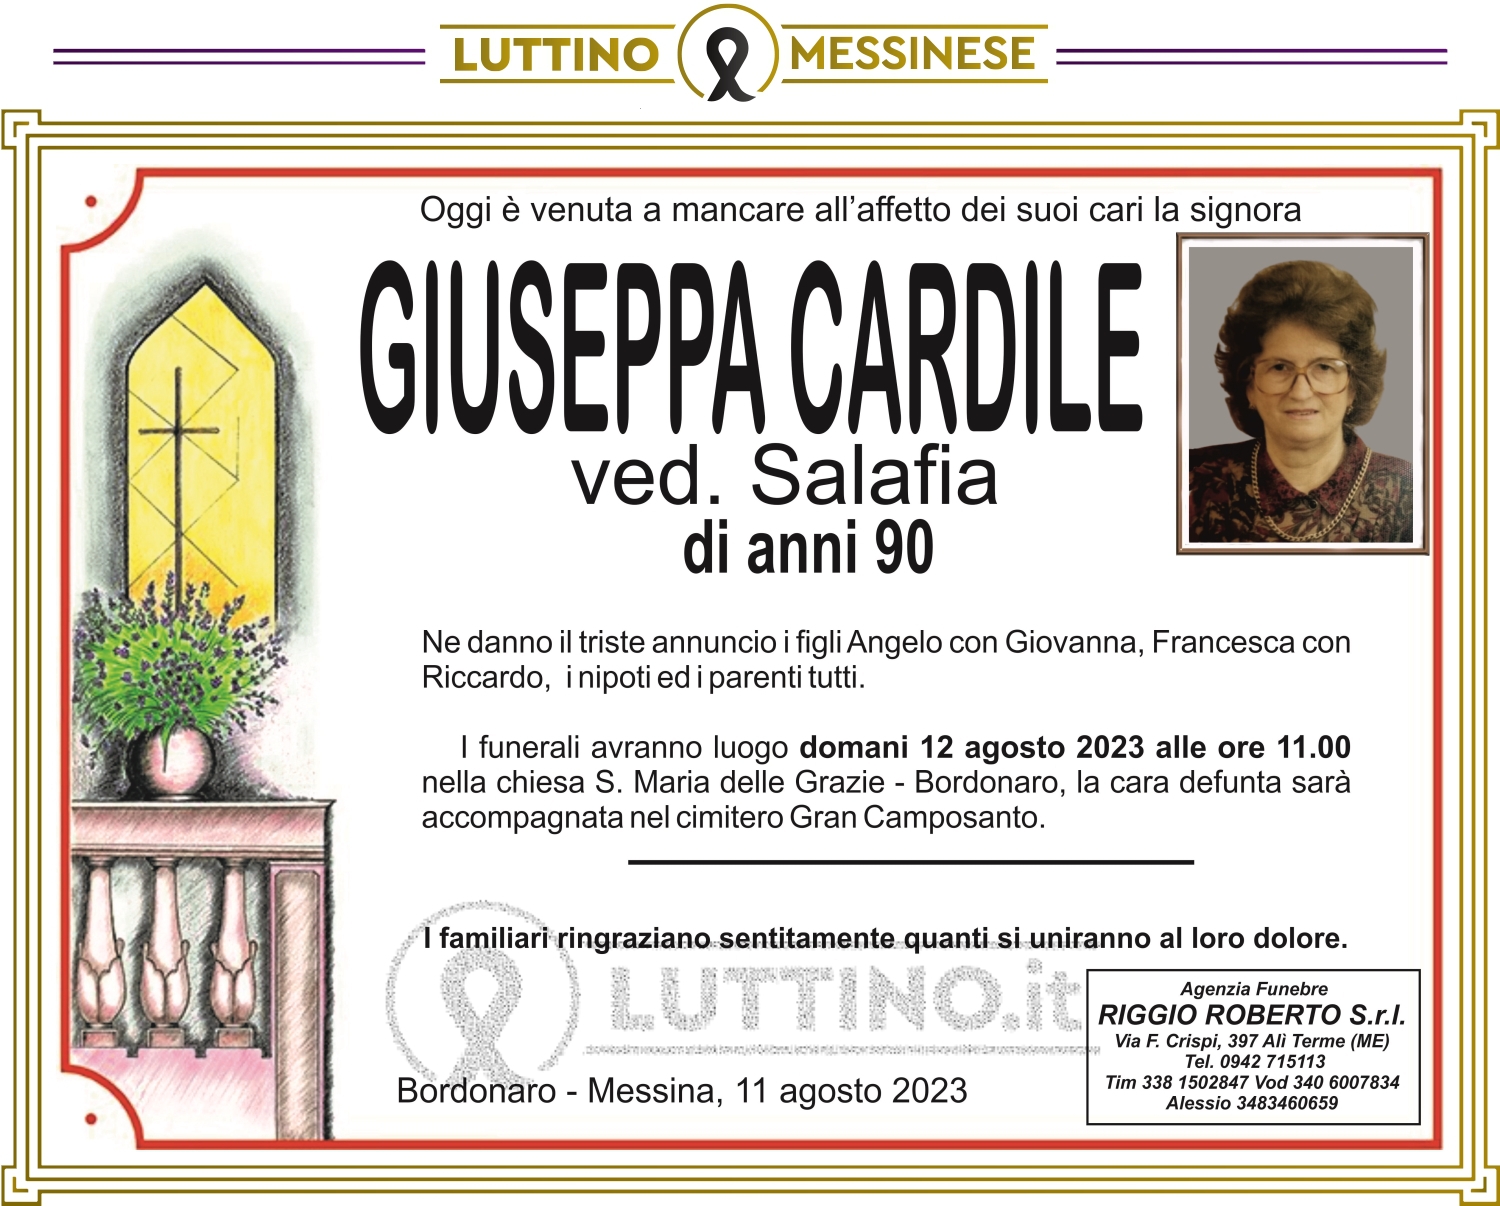 Giuseppa Cardile